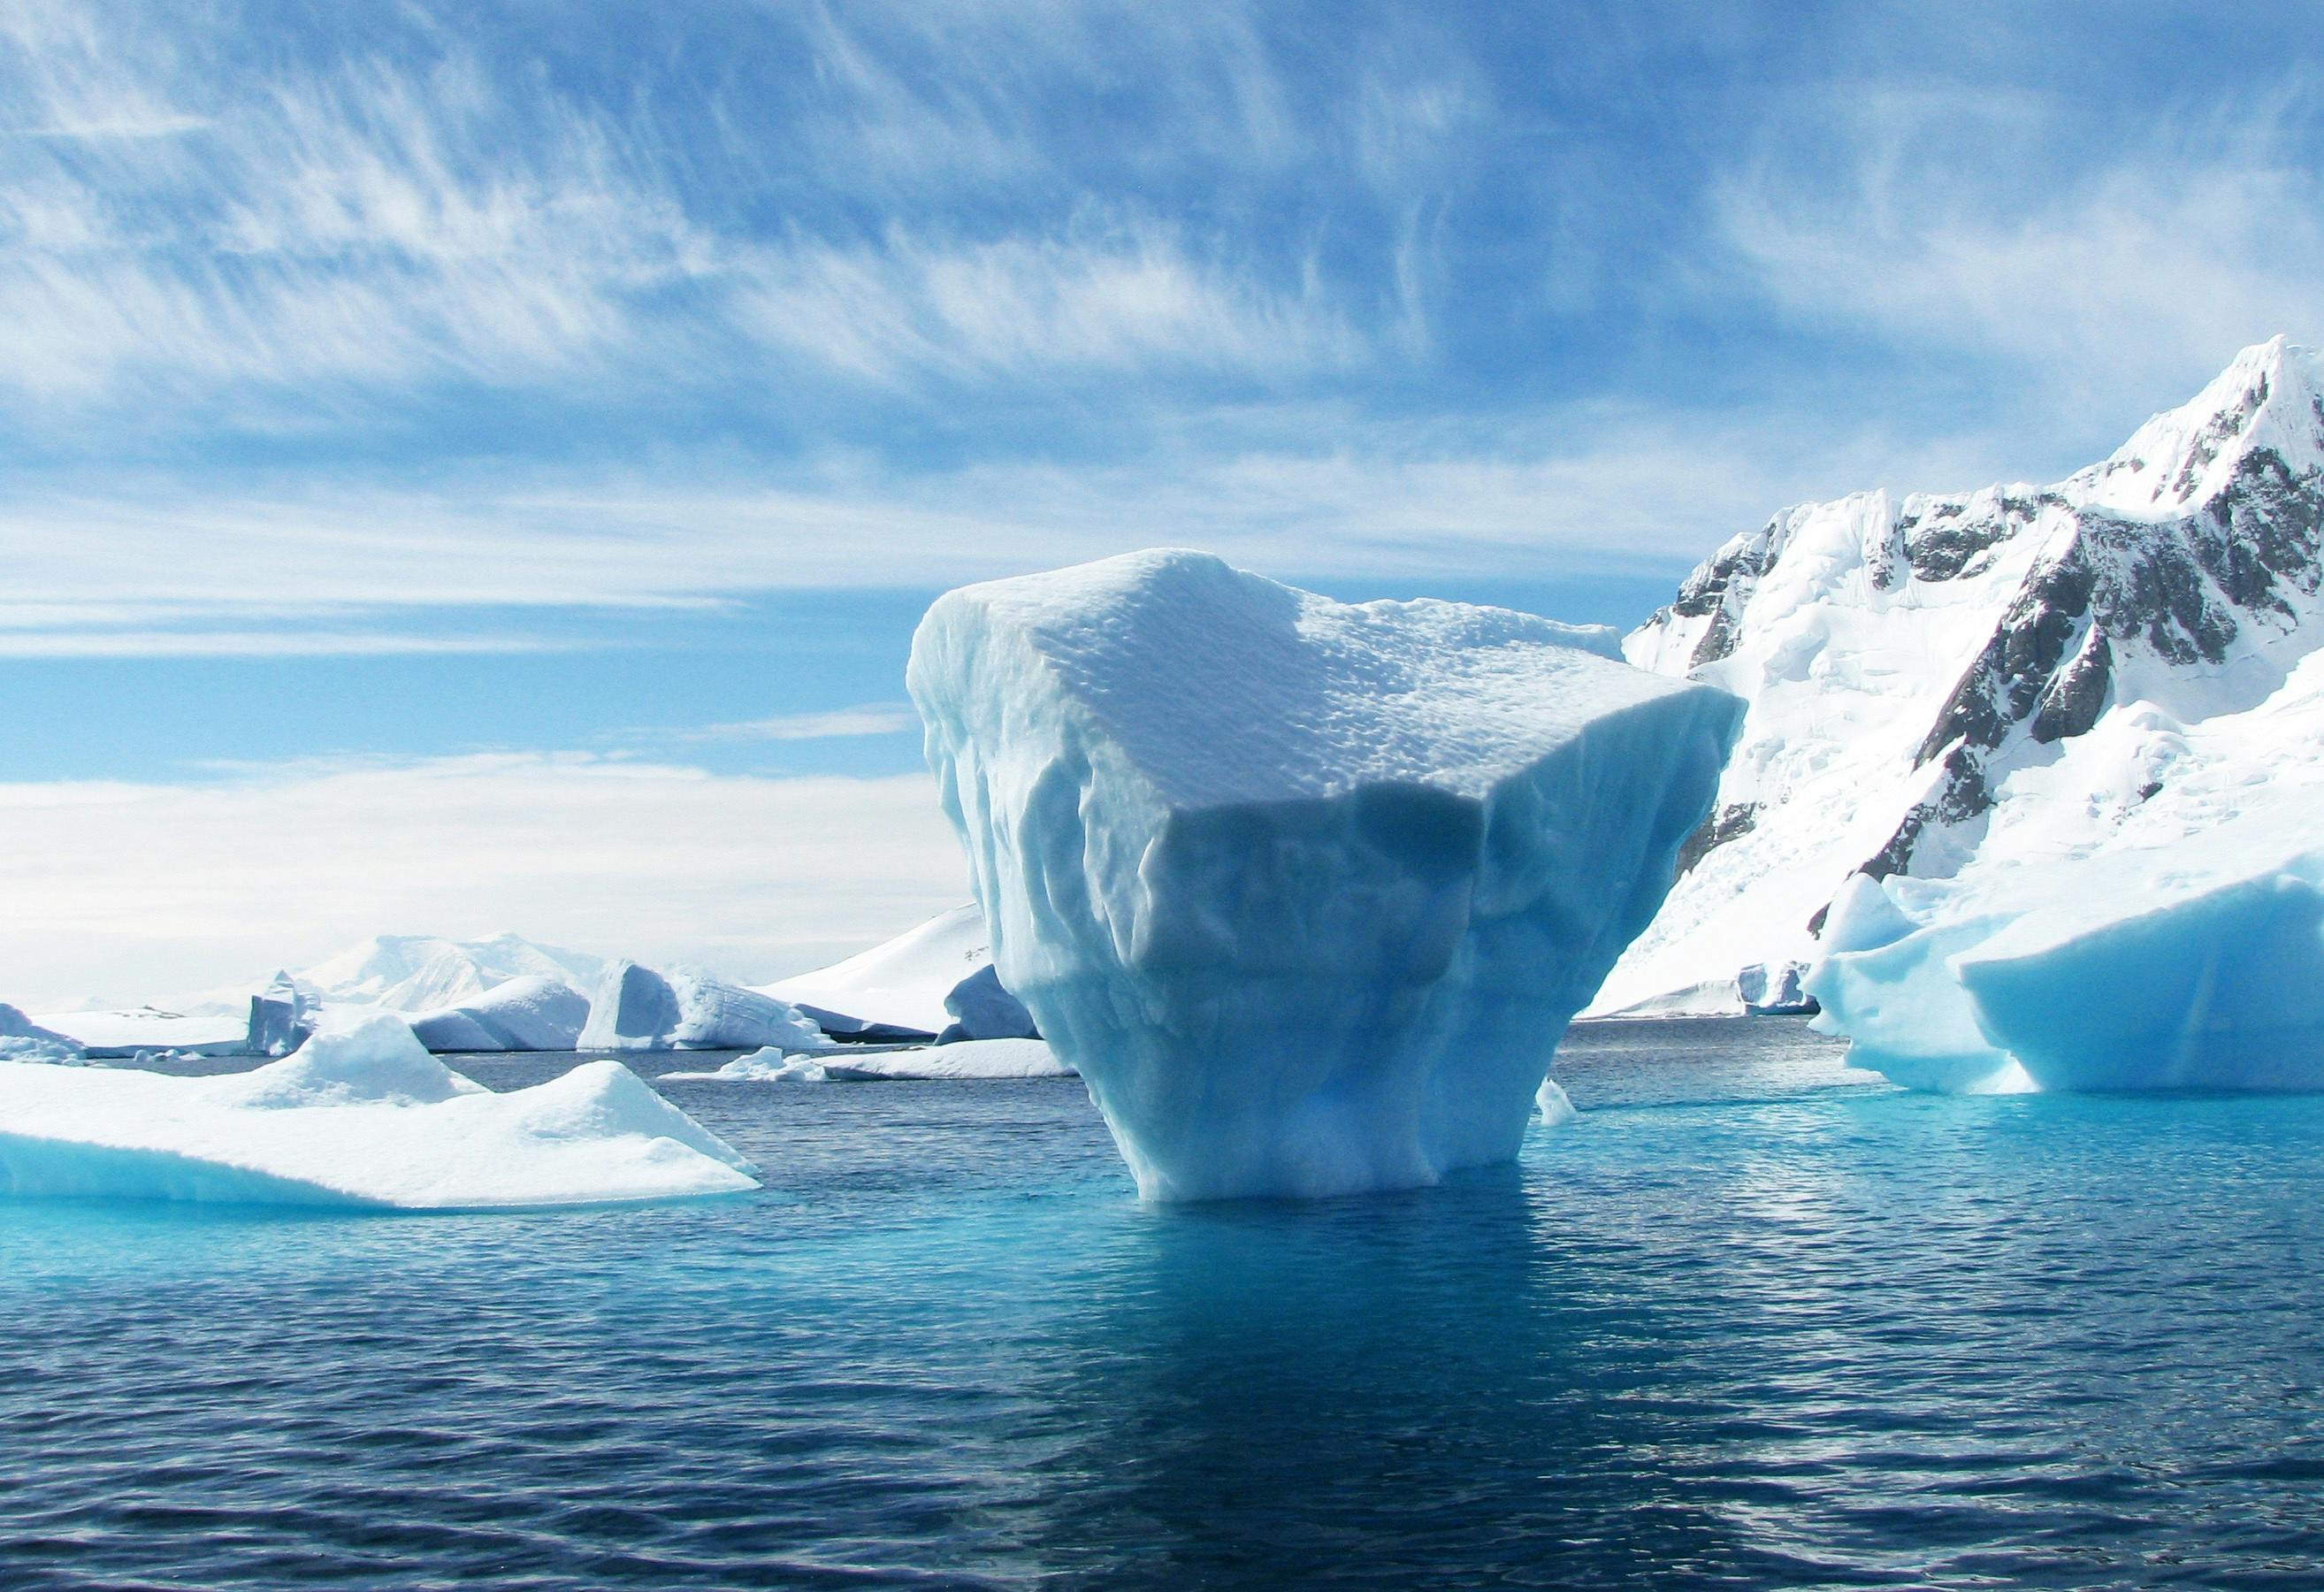 iceberg-antarctica-polar-blue-53389.jpeg?cs=srgb&dl=pexels-pixabay-53389.jpg&fm=jpg